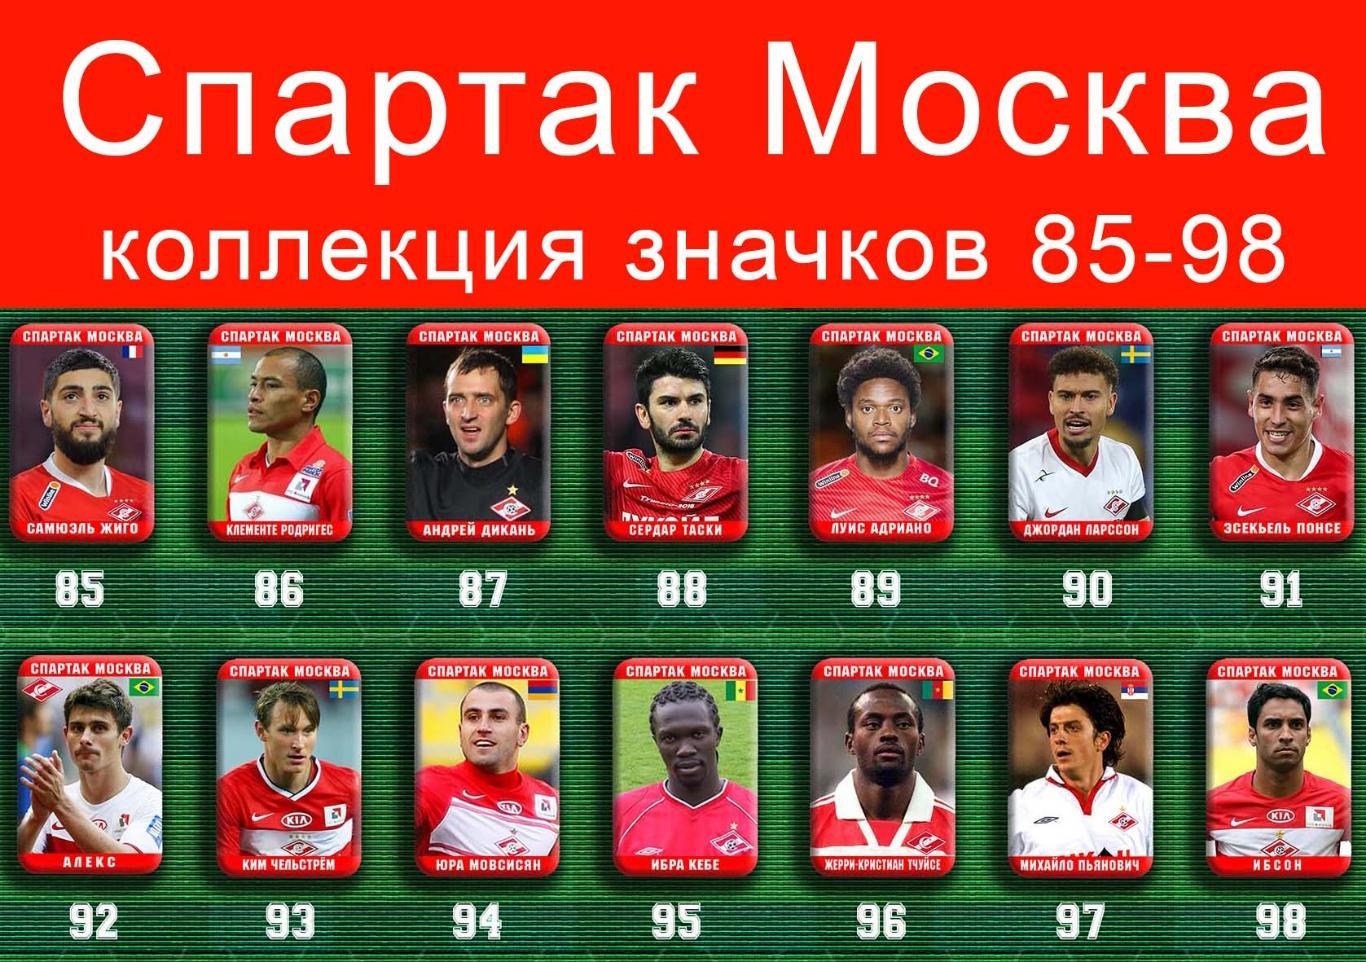 Спартак Москва 159 значков - 85-98